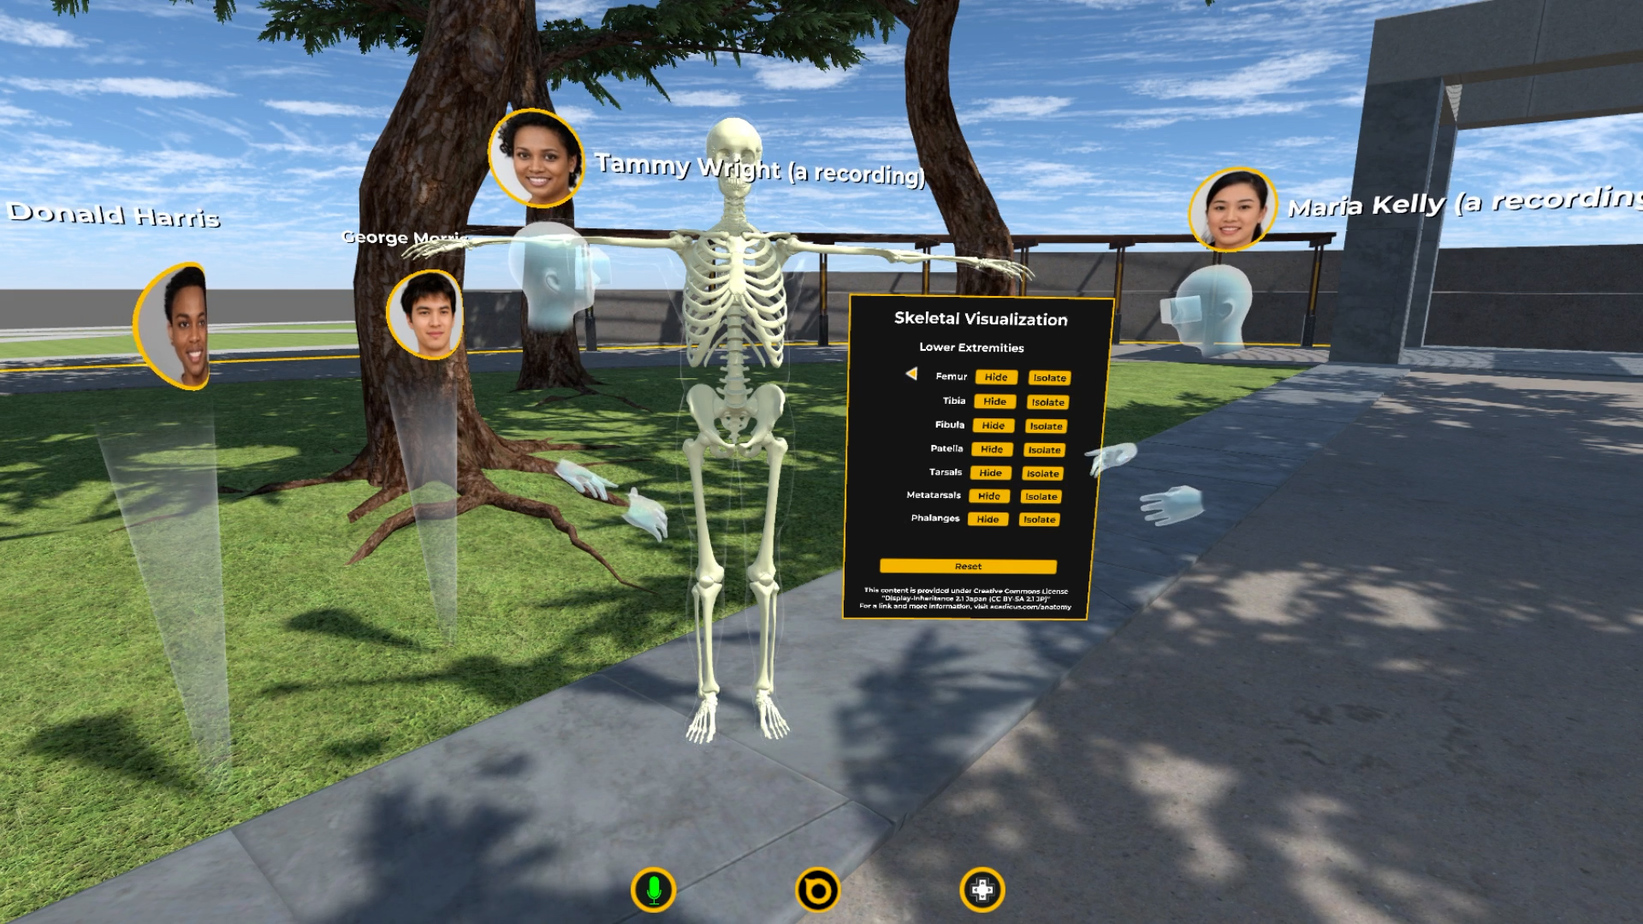 virtual skeletal anatomy in VR